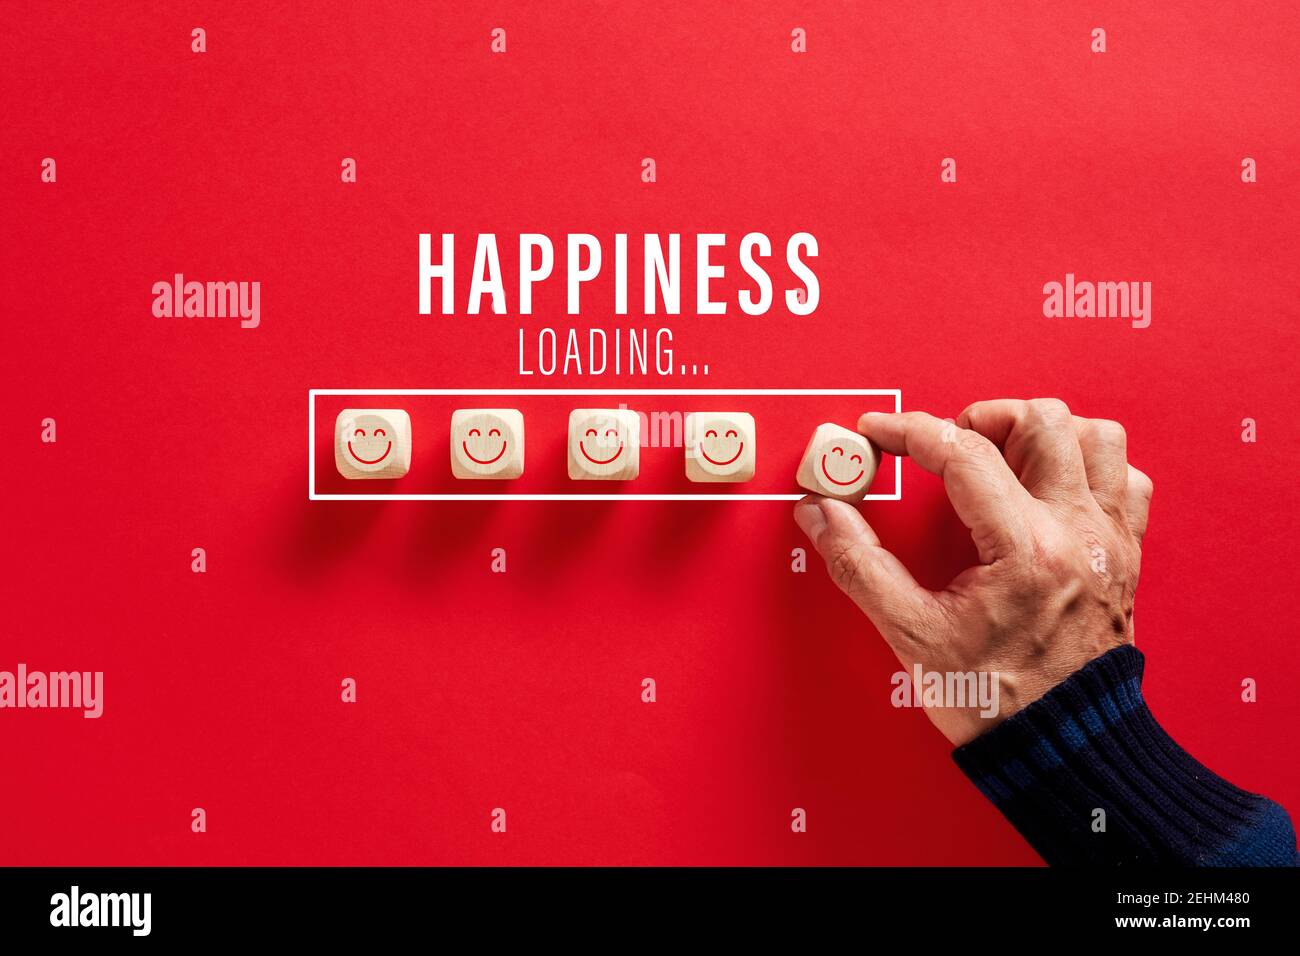 Mano maschile mettendo i blocchi di legno con volti sorridenti nella parola felicità barra di caricamento su sfondo rosso. Crescente felicità e positività concetto. Foto Stock